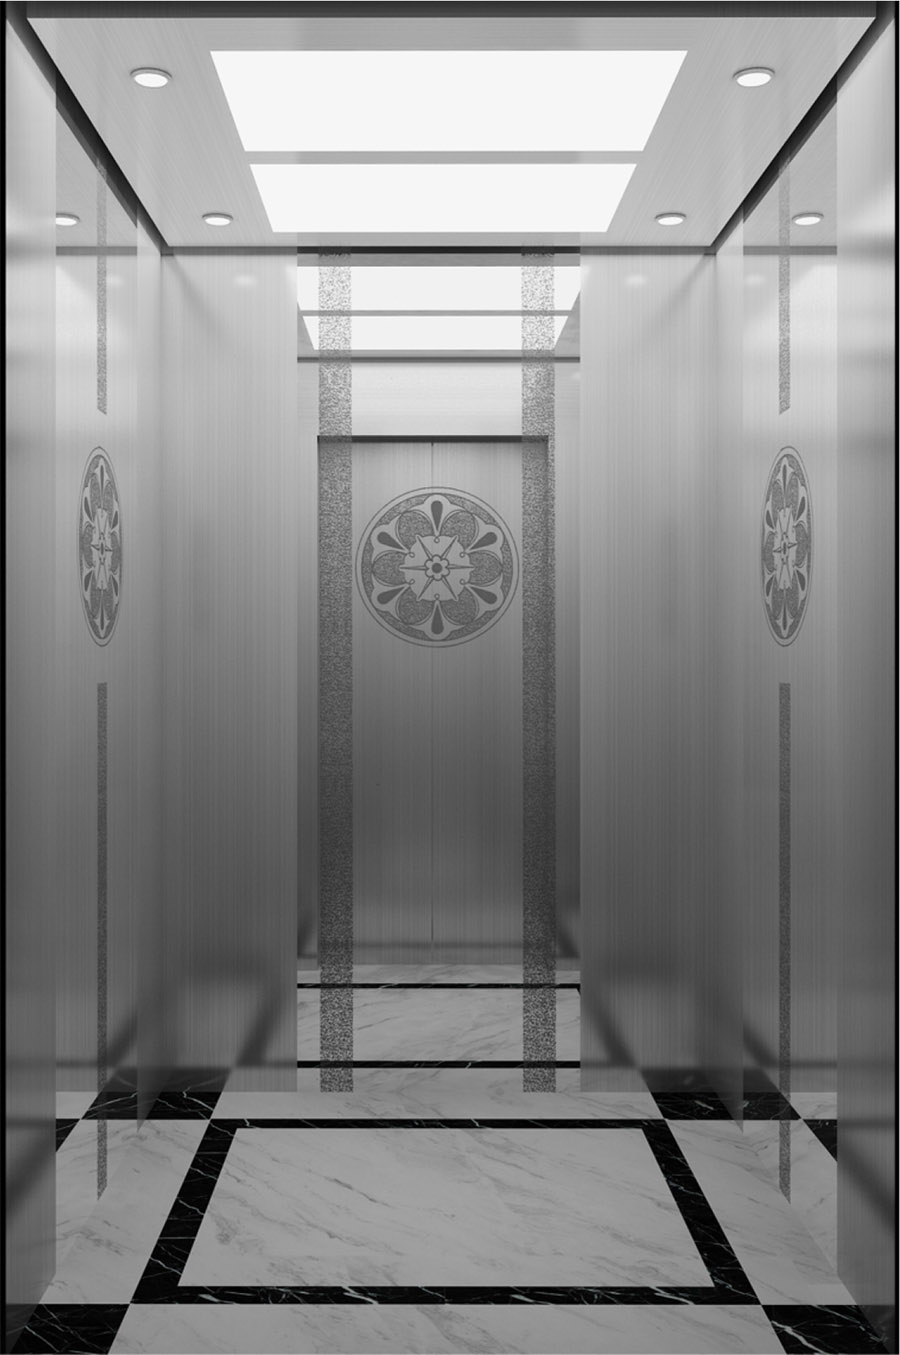 师为其定制了ufj-p01型号的旧楼电梯加装设计安装费用方案,其中轿门